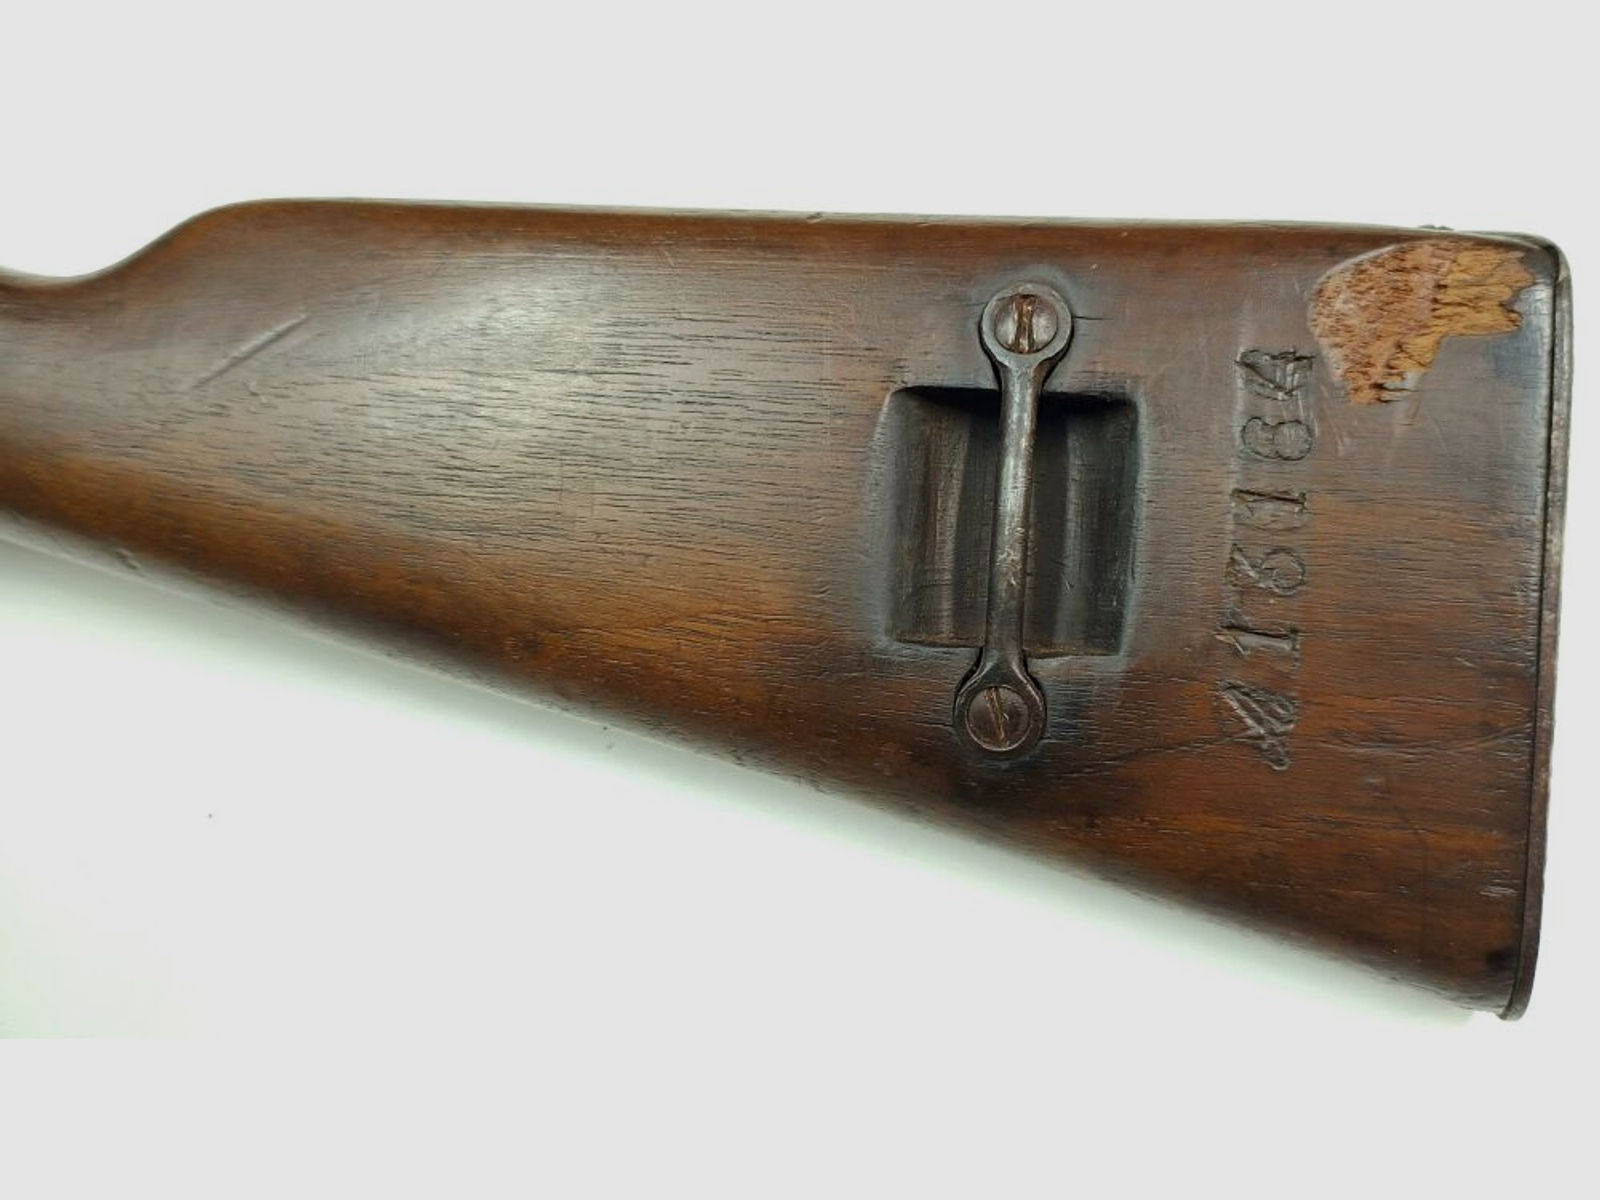 MAC Berthier M1890 Carbine	 MAC Berthier M1890 Carbine